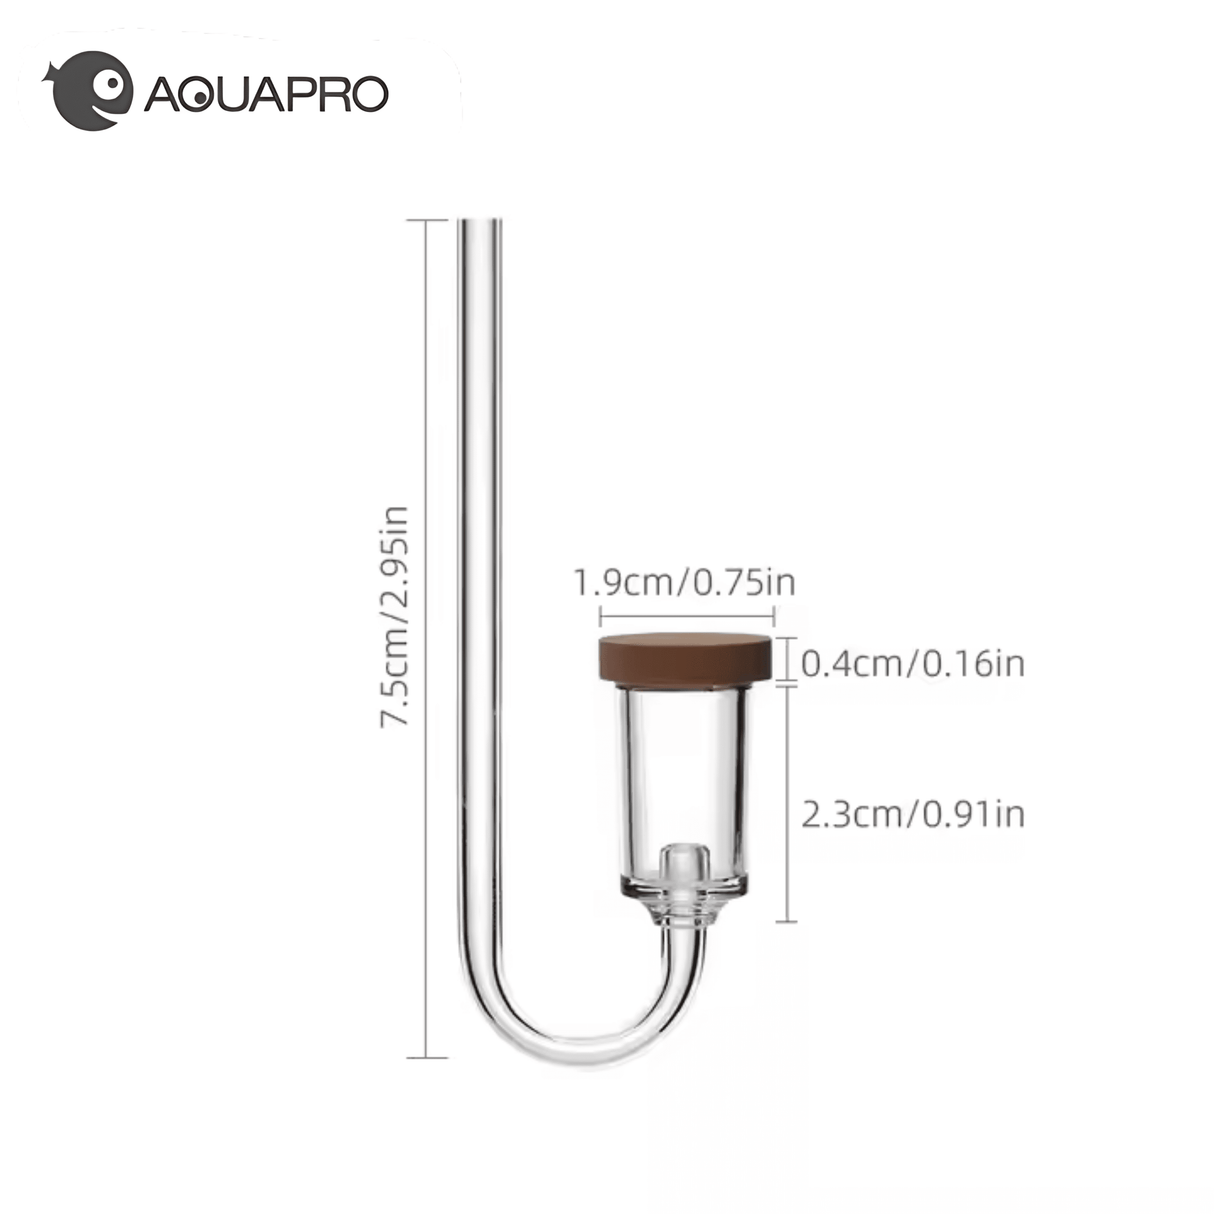 Aquapro Neo Co2 Diffuser - Medium Dimensions